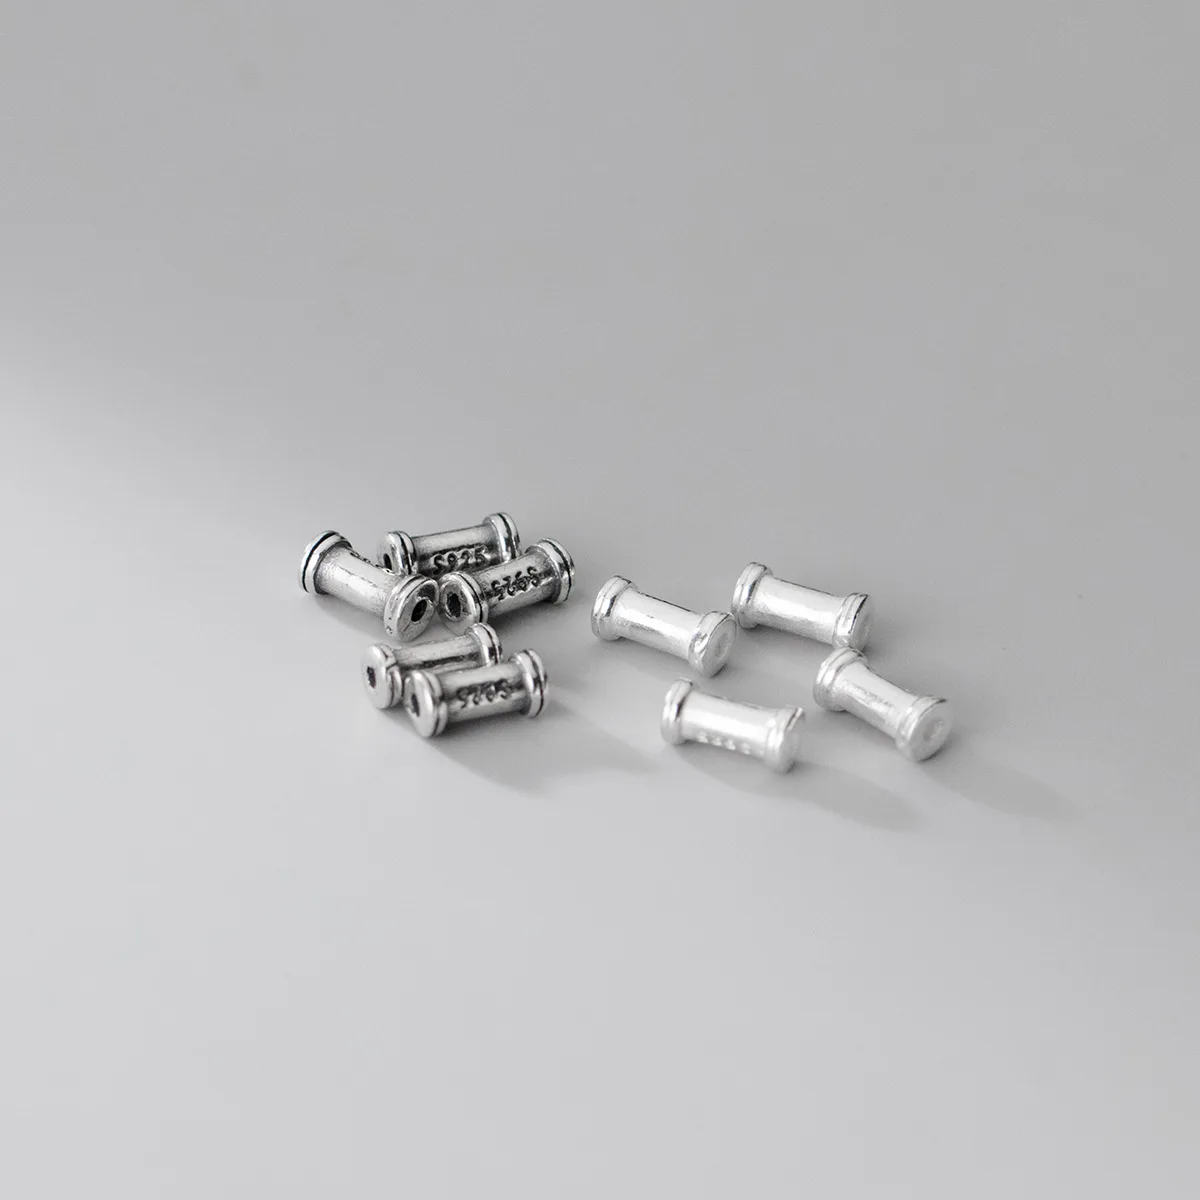 2 adet / grup 925 Ayar Gümüş Kısa Tüp Gevşek Boncuk 6mm Moda El Yapımı Bilezik Spacer Gümüş Boncuk DIY Takı Aksesuarları Görüntü 1